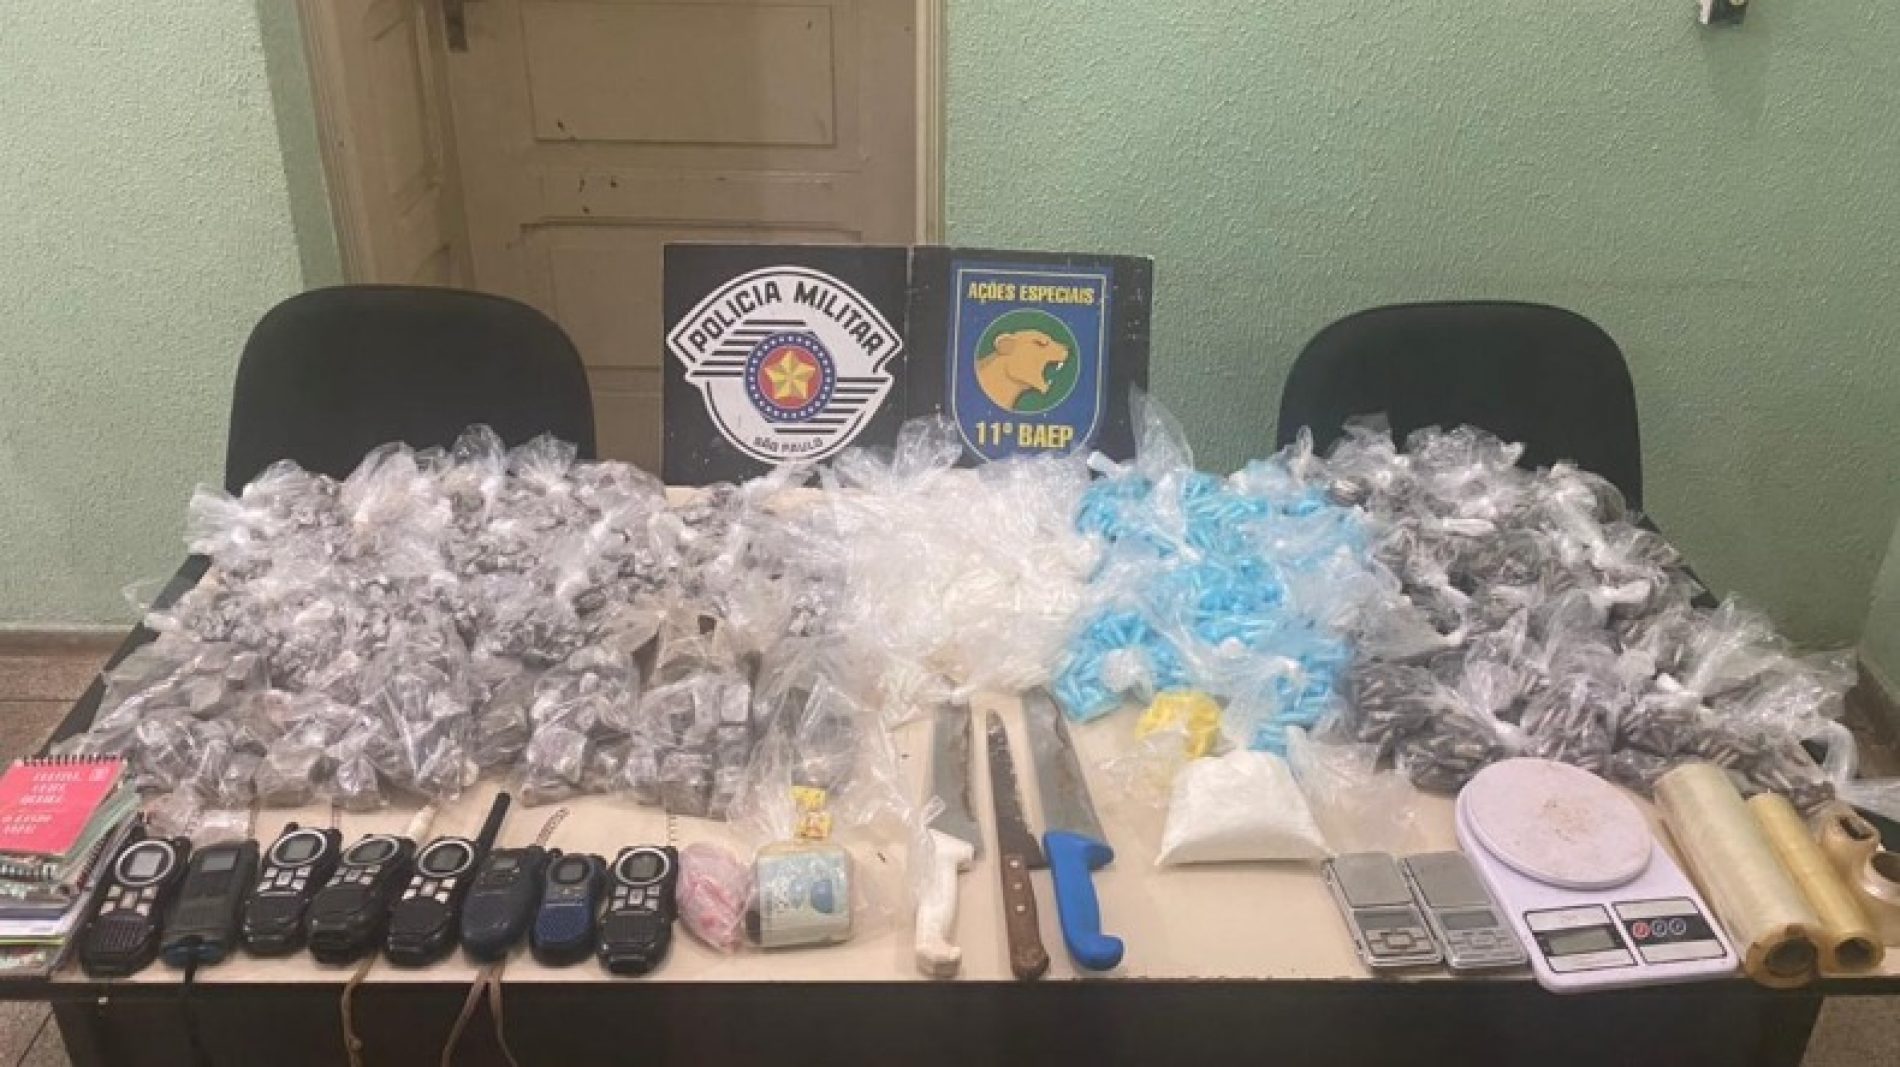 REGIÃO: Baep prende 2 e acha 10 kg de drogas em comunidade